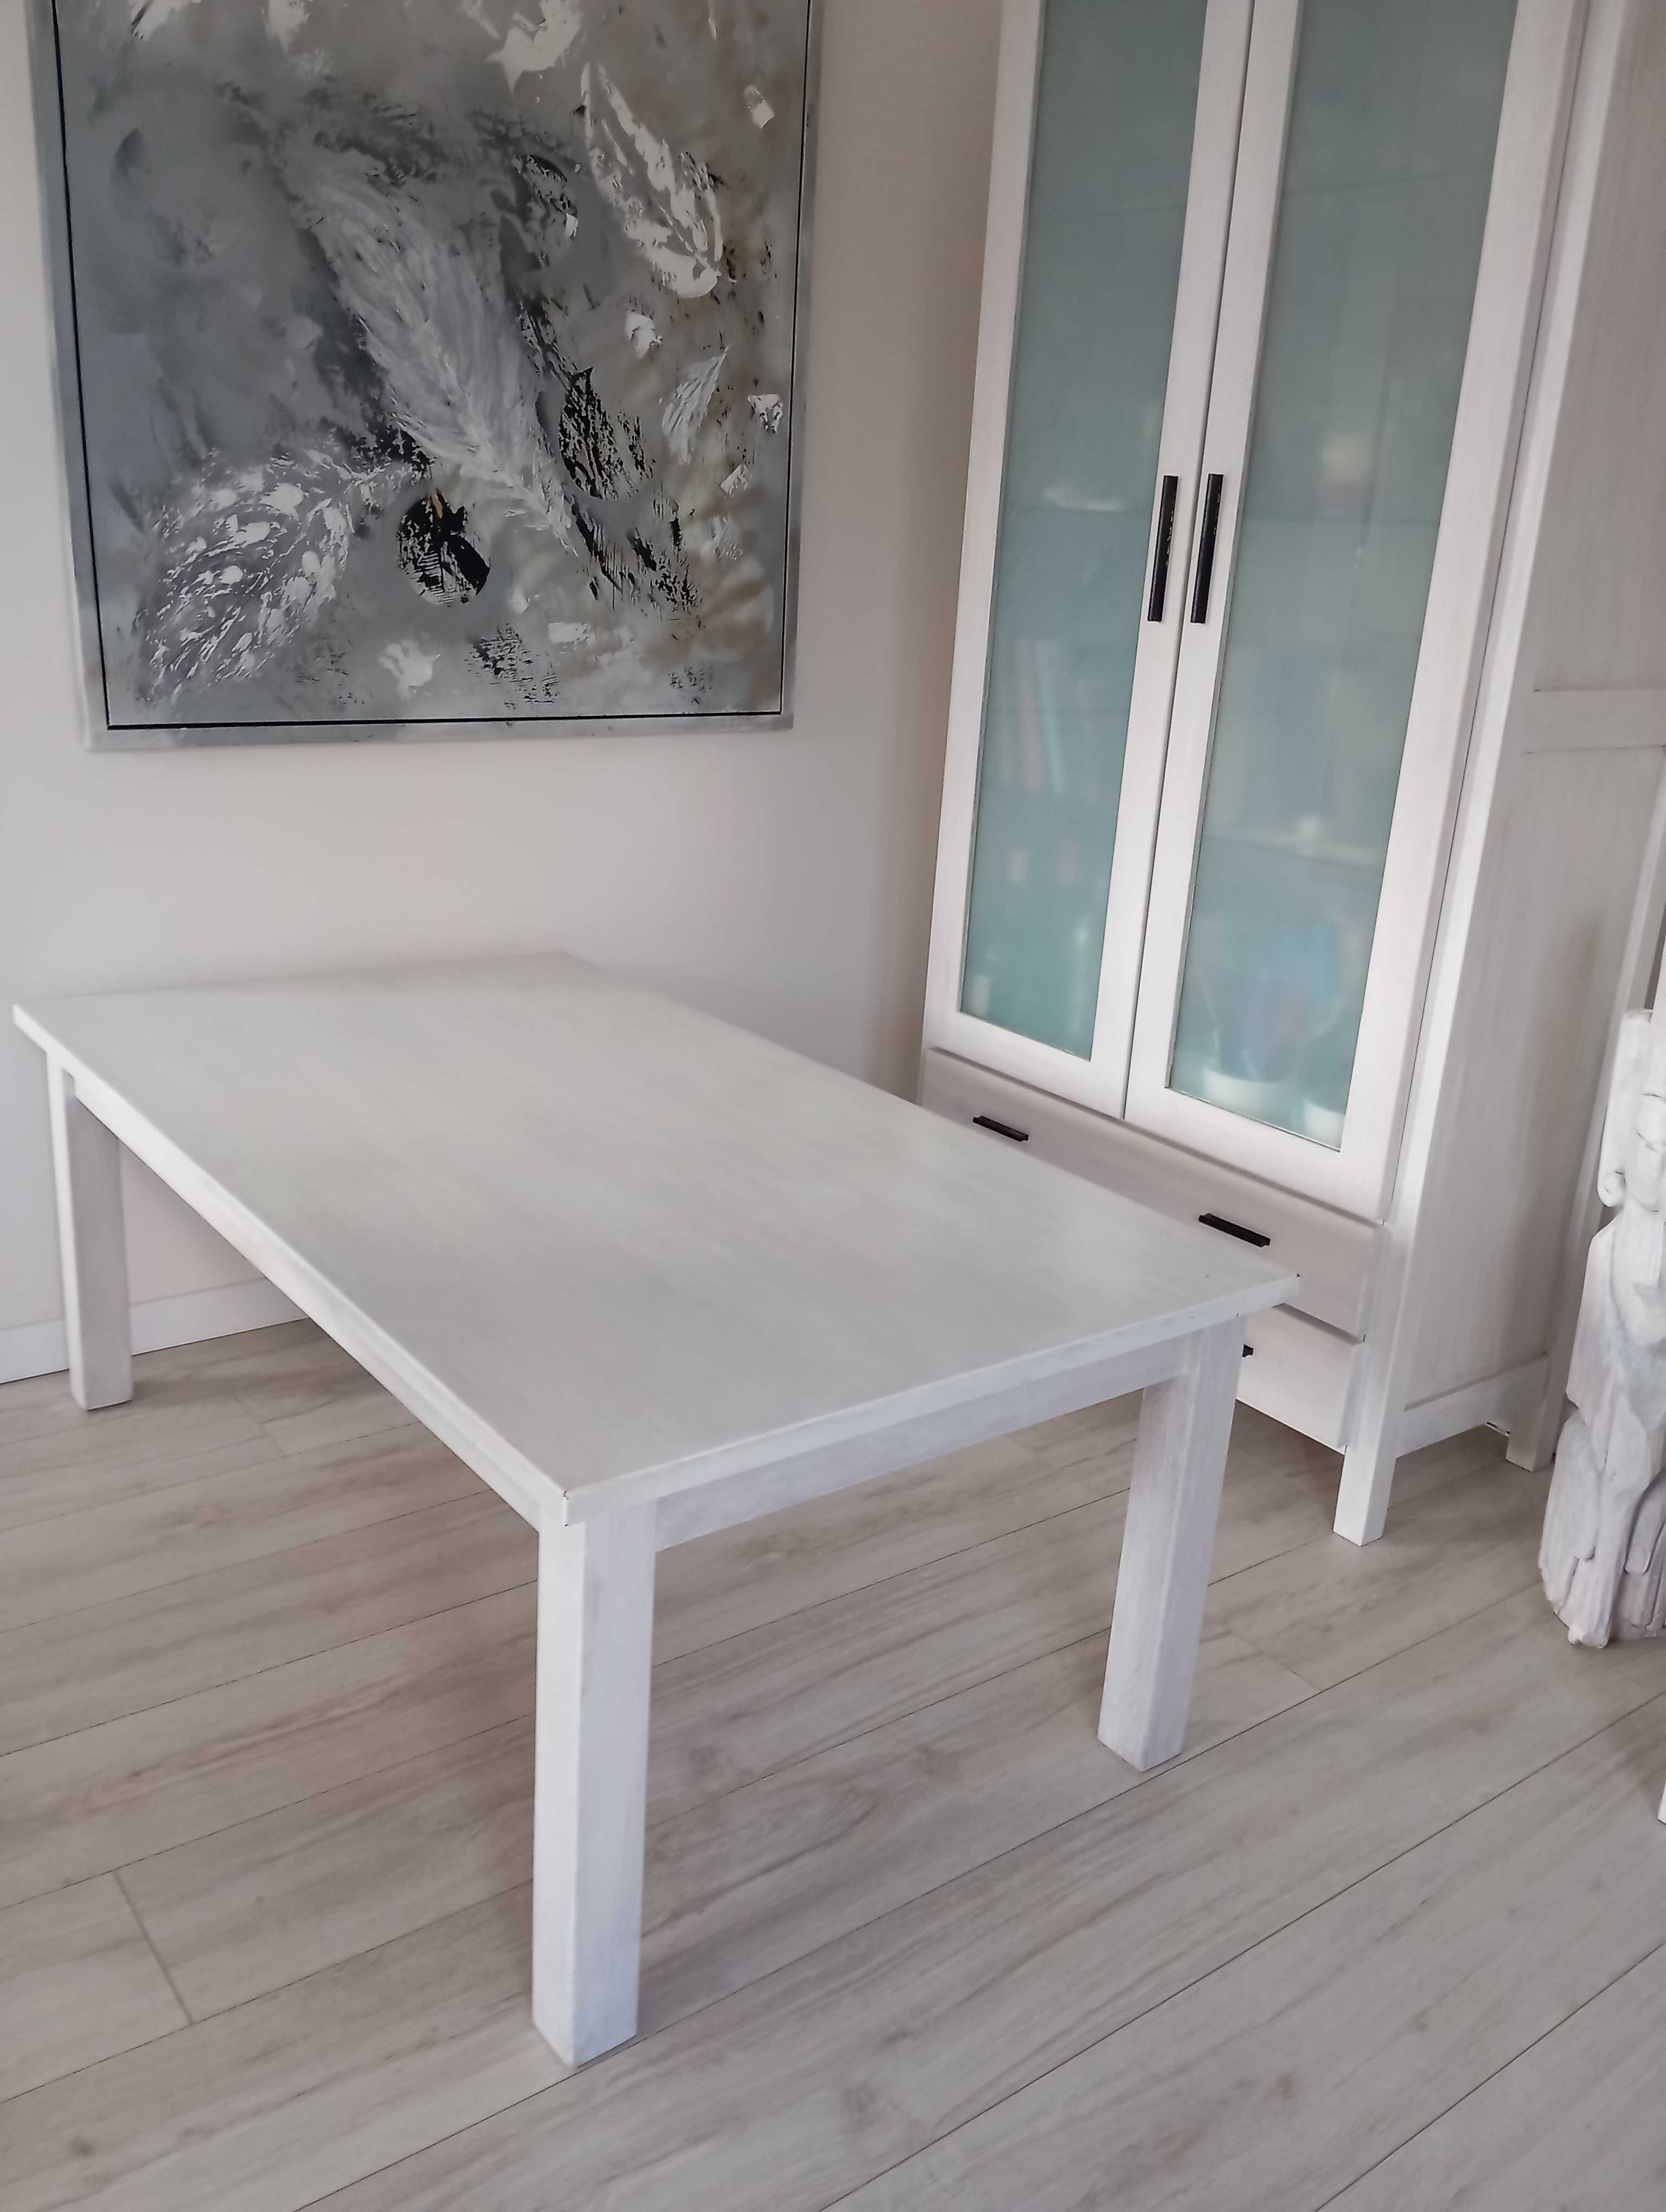 Stół dębowy ława drewniana bielona 130 cm x72 cm